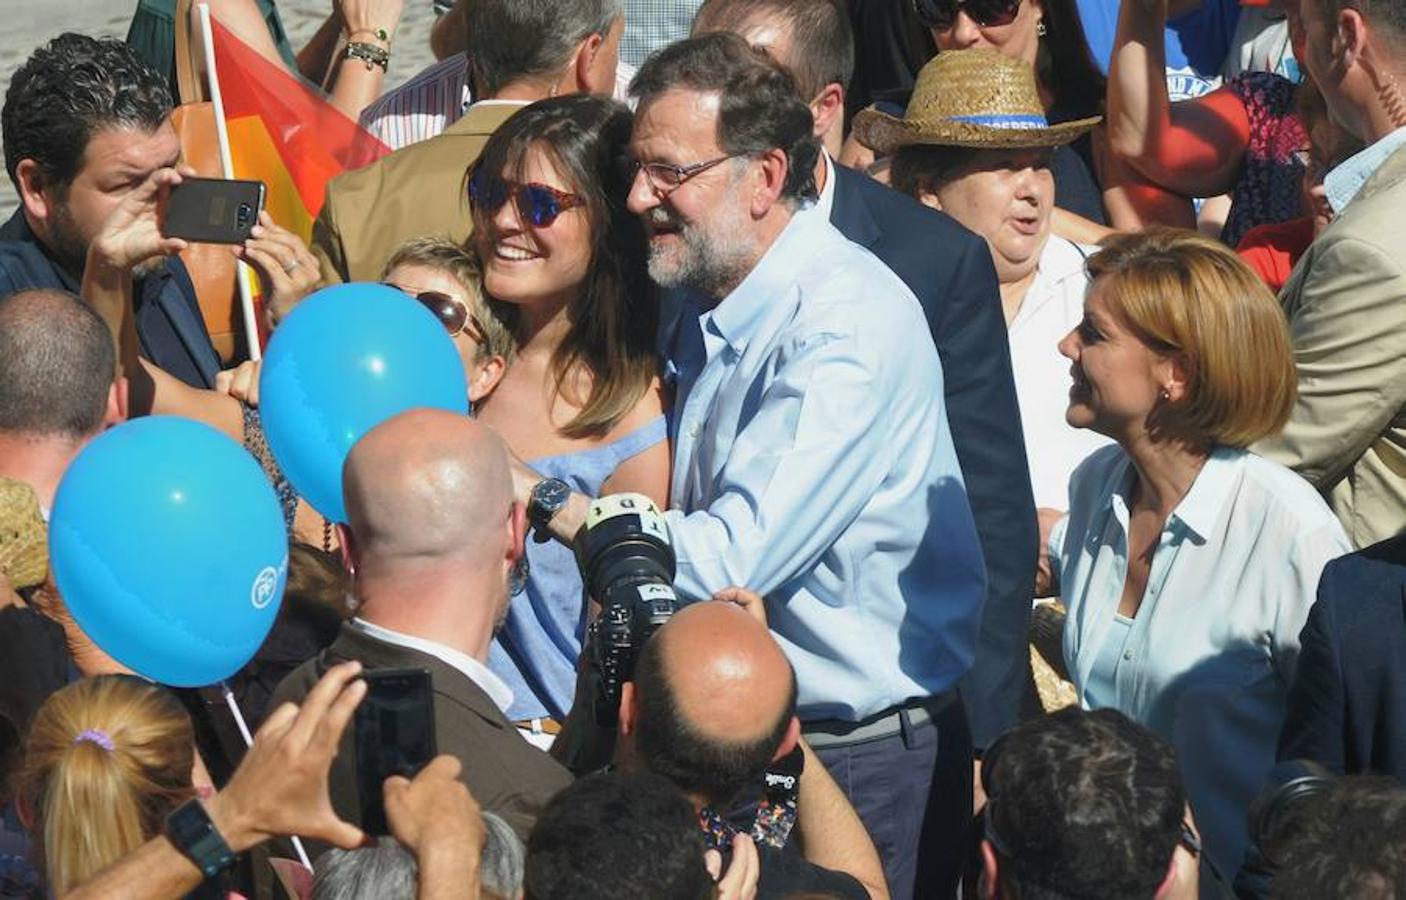 Rajoy ha tardado cerca de 20 minutos en recorrer un espacio de 20 metros entre numerosos «selfies» y abrazos